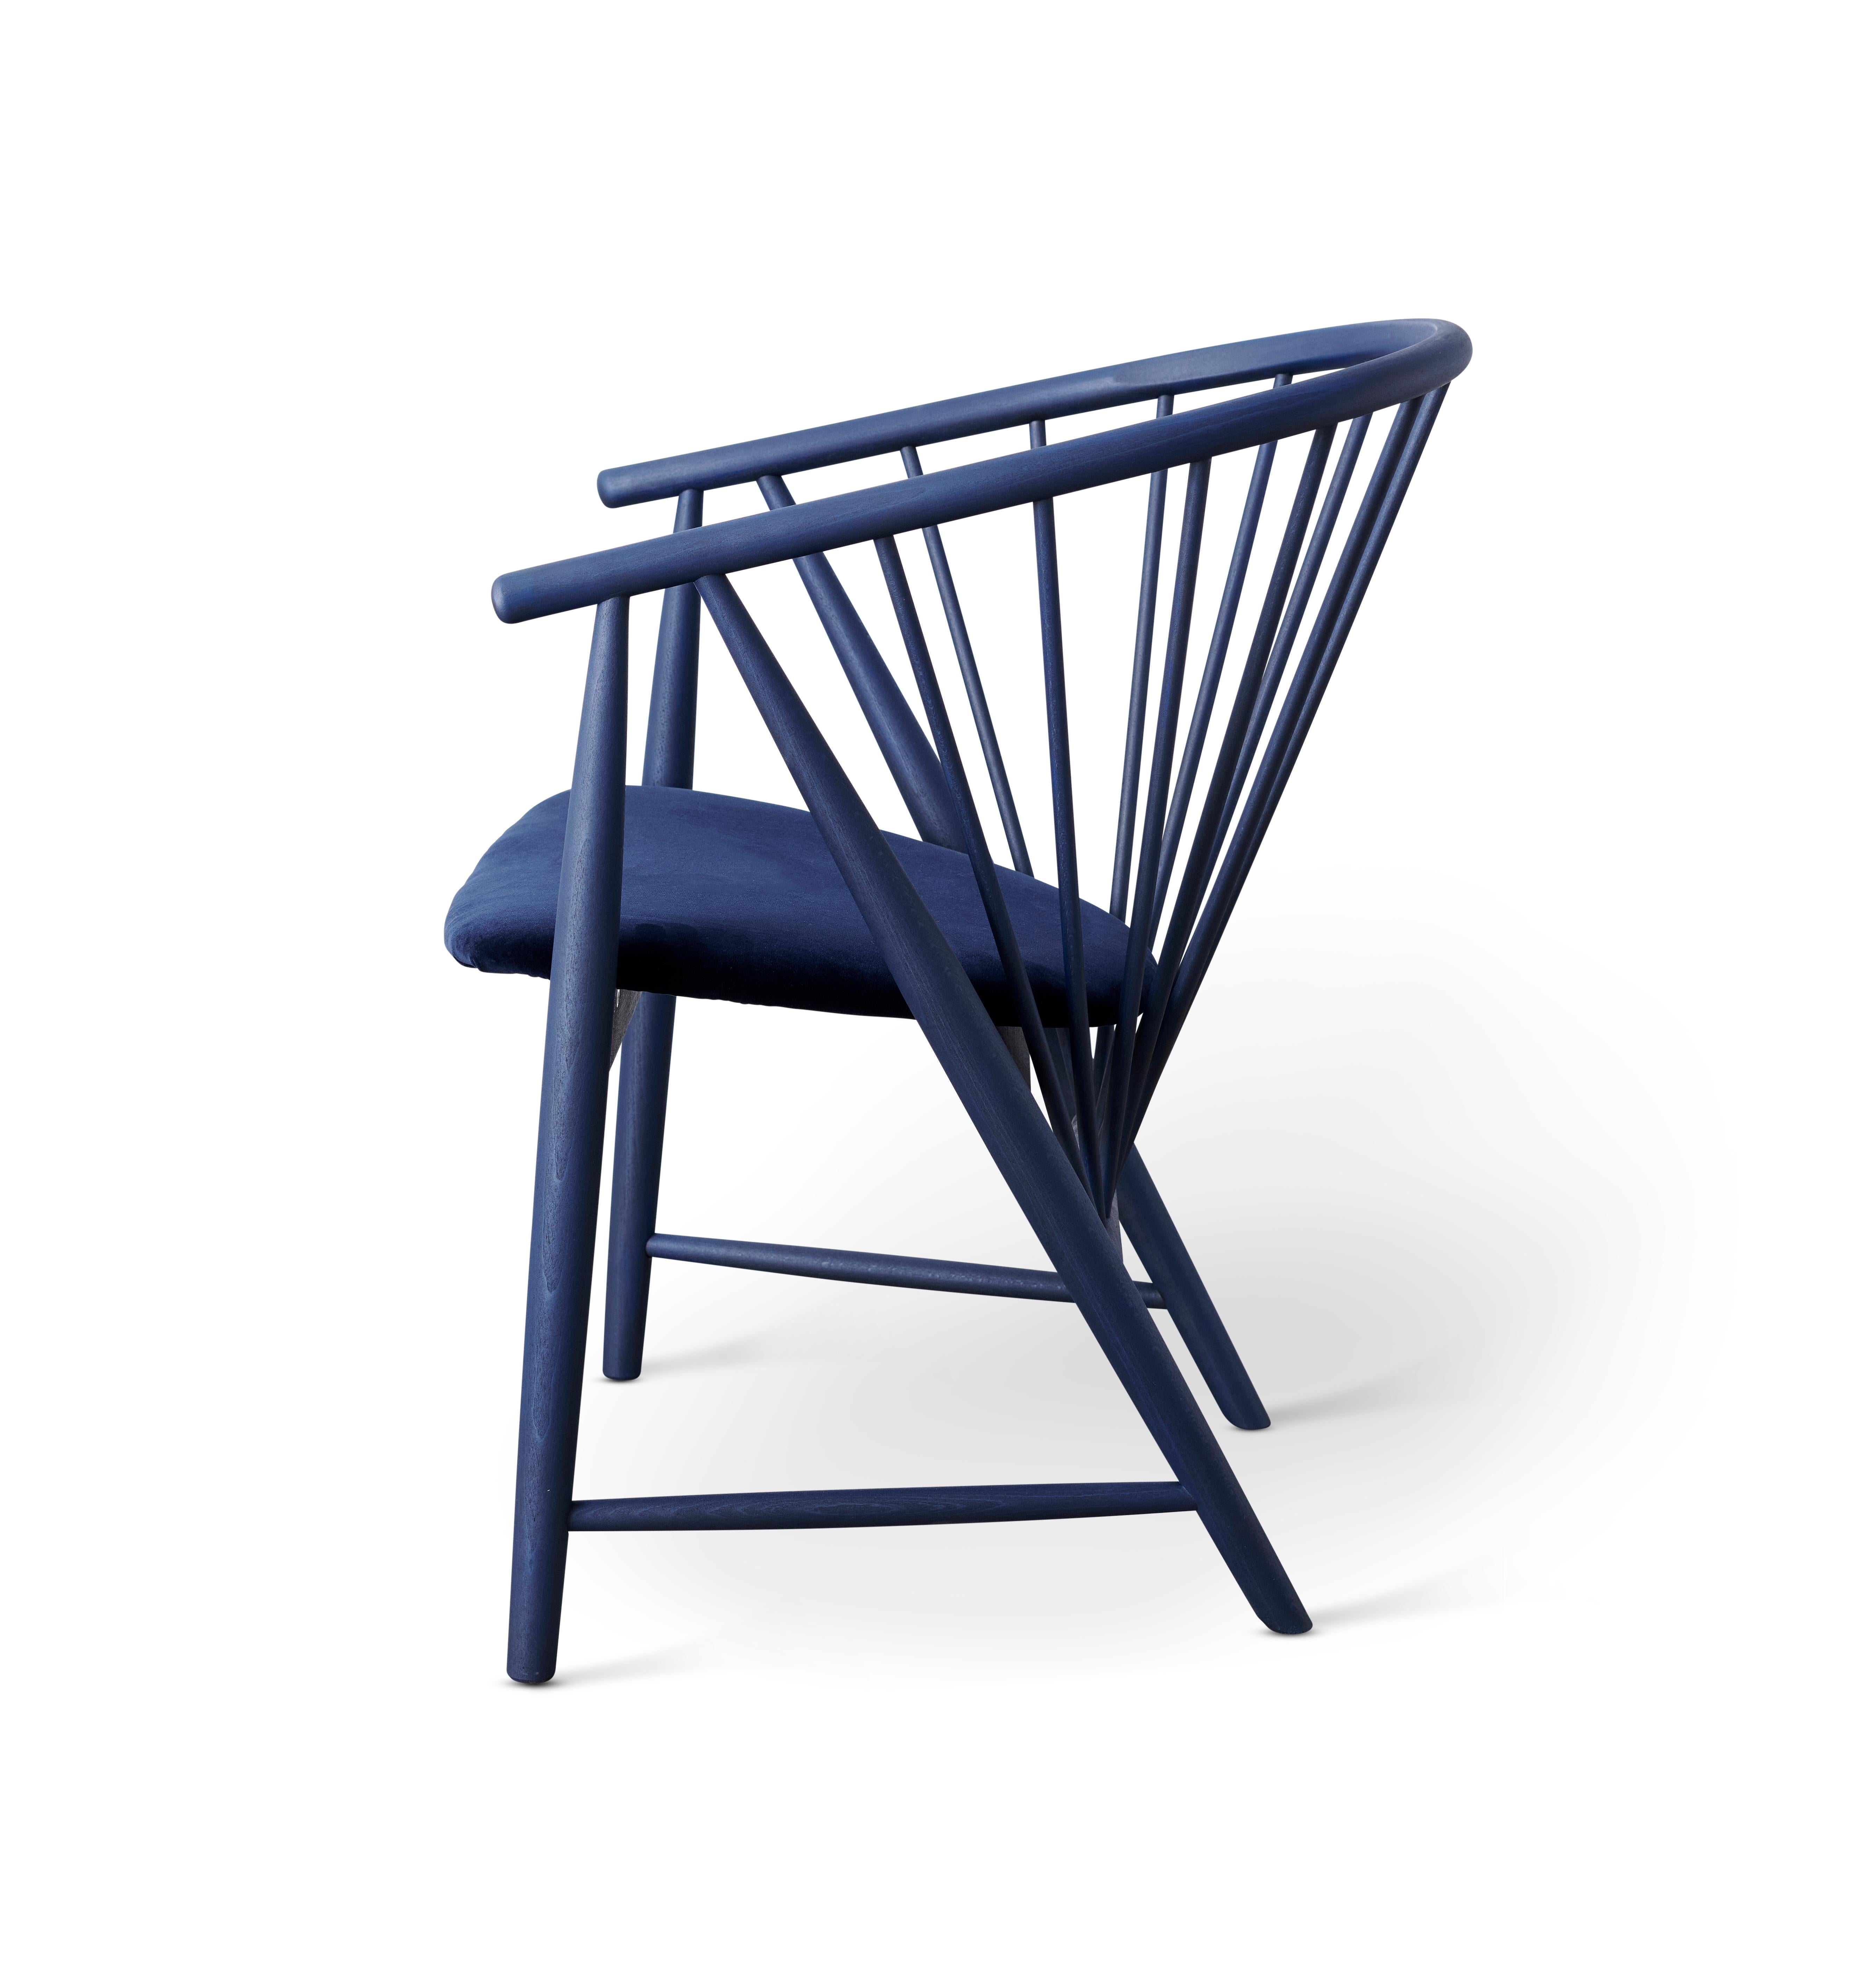 Ein Paar SUNFEATHER Lounge Sessel in nachtblauem Öl und dunkelblauem Samt Sitz.
Handgefertigt in Schweden aus massiver, gedämpfter Buche.

SUNFEATHER wurde 1948 von Sonna Rosén entworfen und galt sofort als Designklassiker und wurde für seine